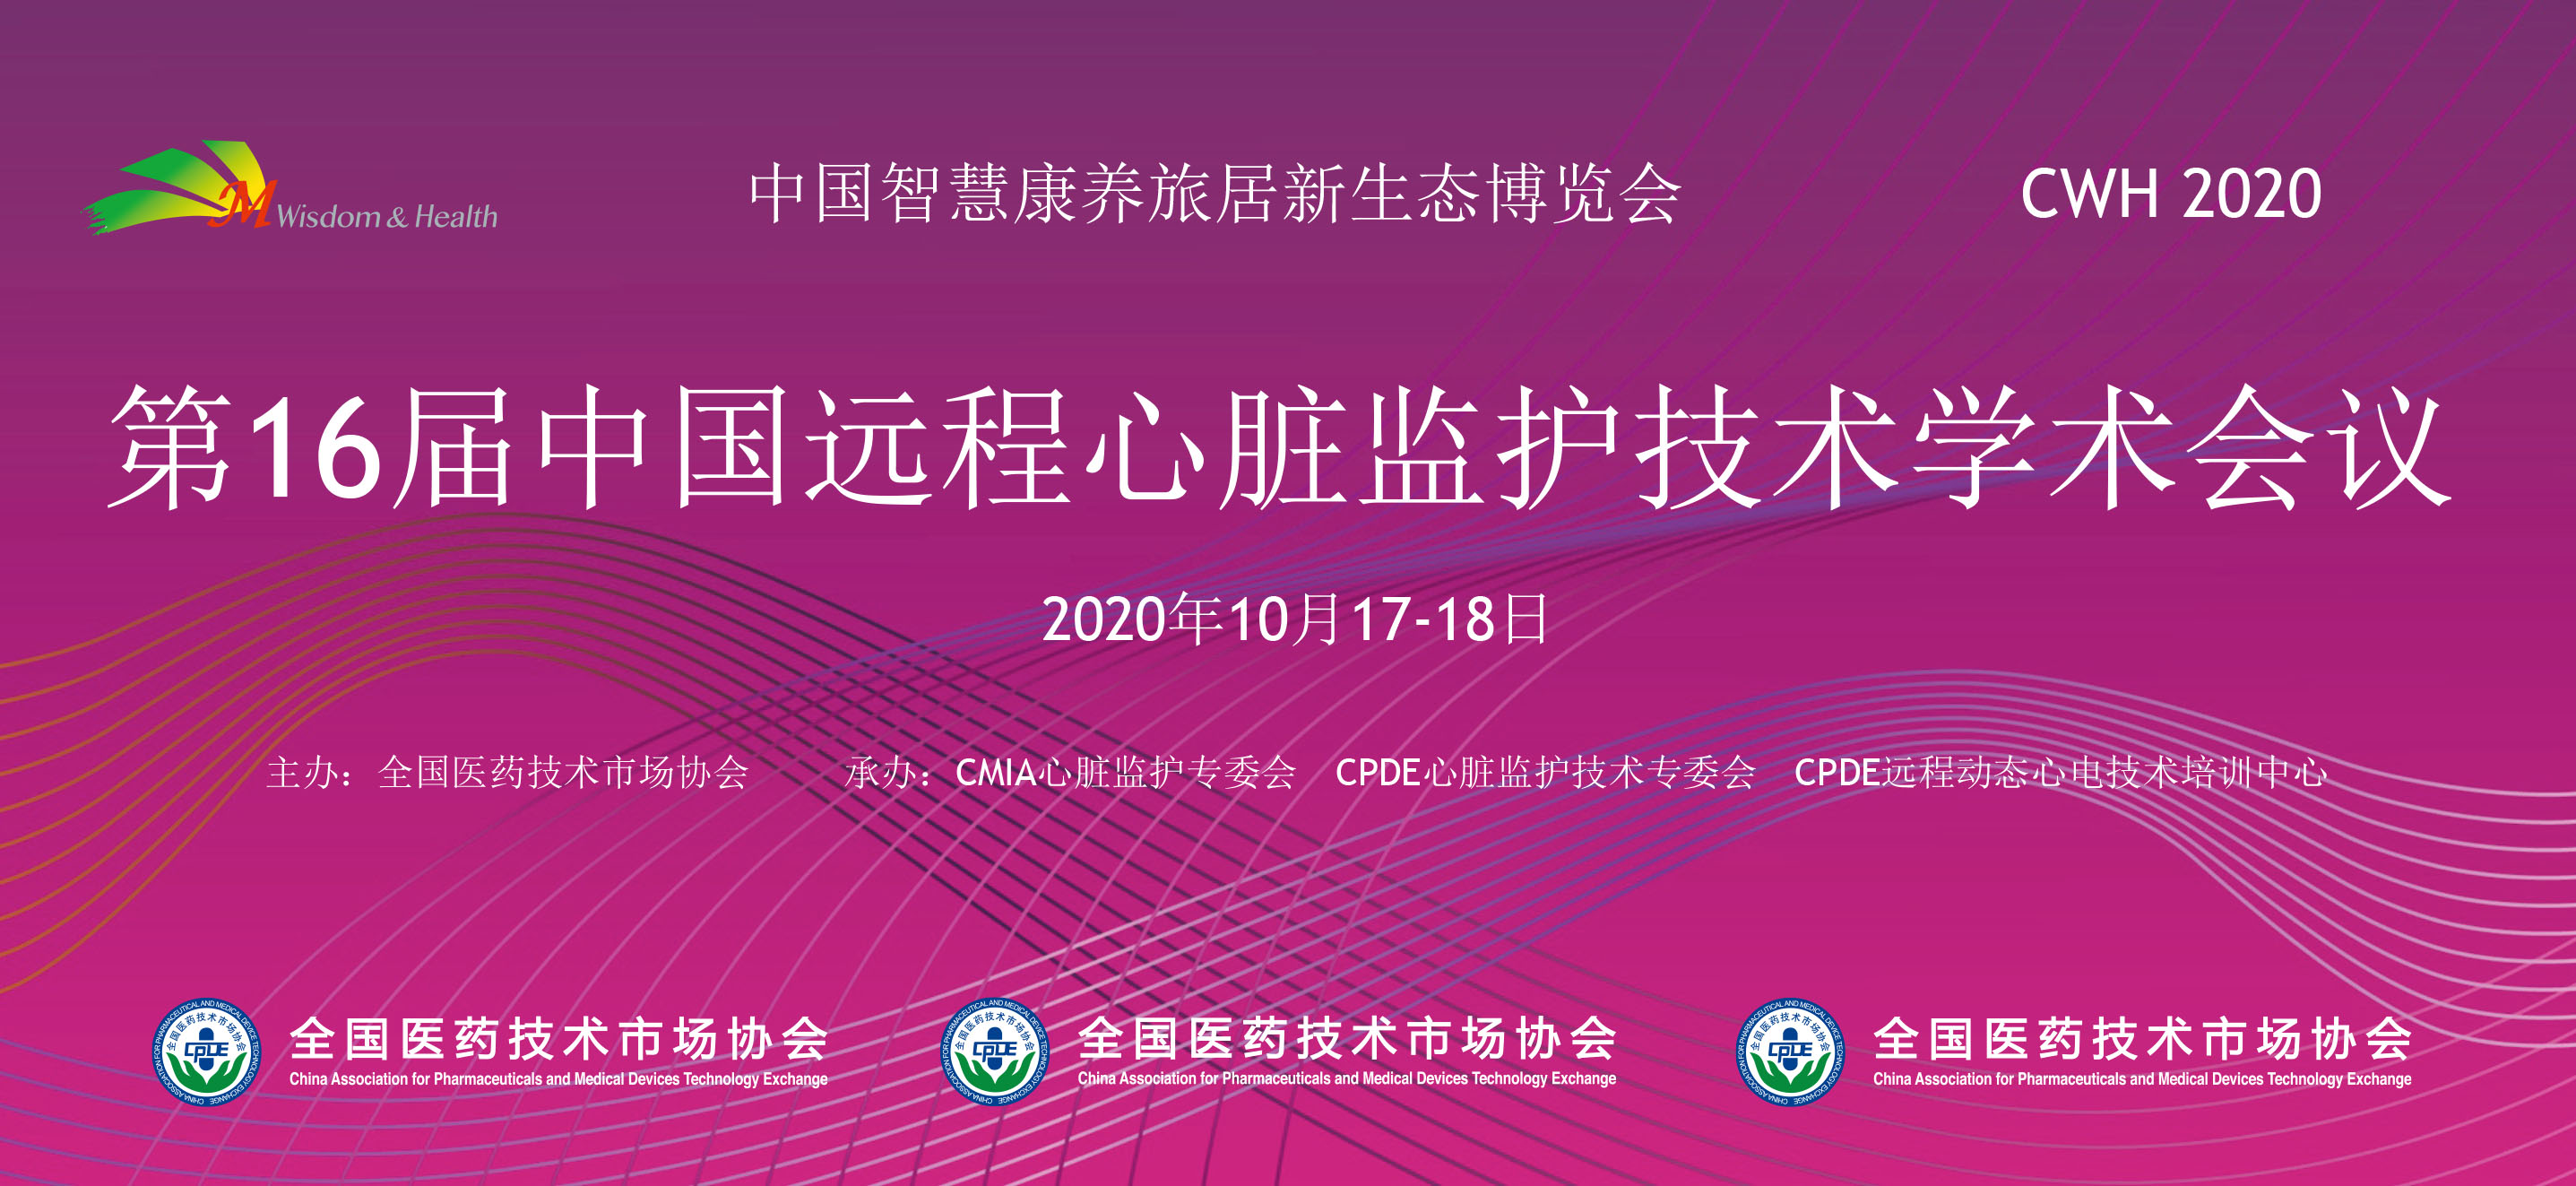 第16届中国远程心脏监护技术学术会议